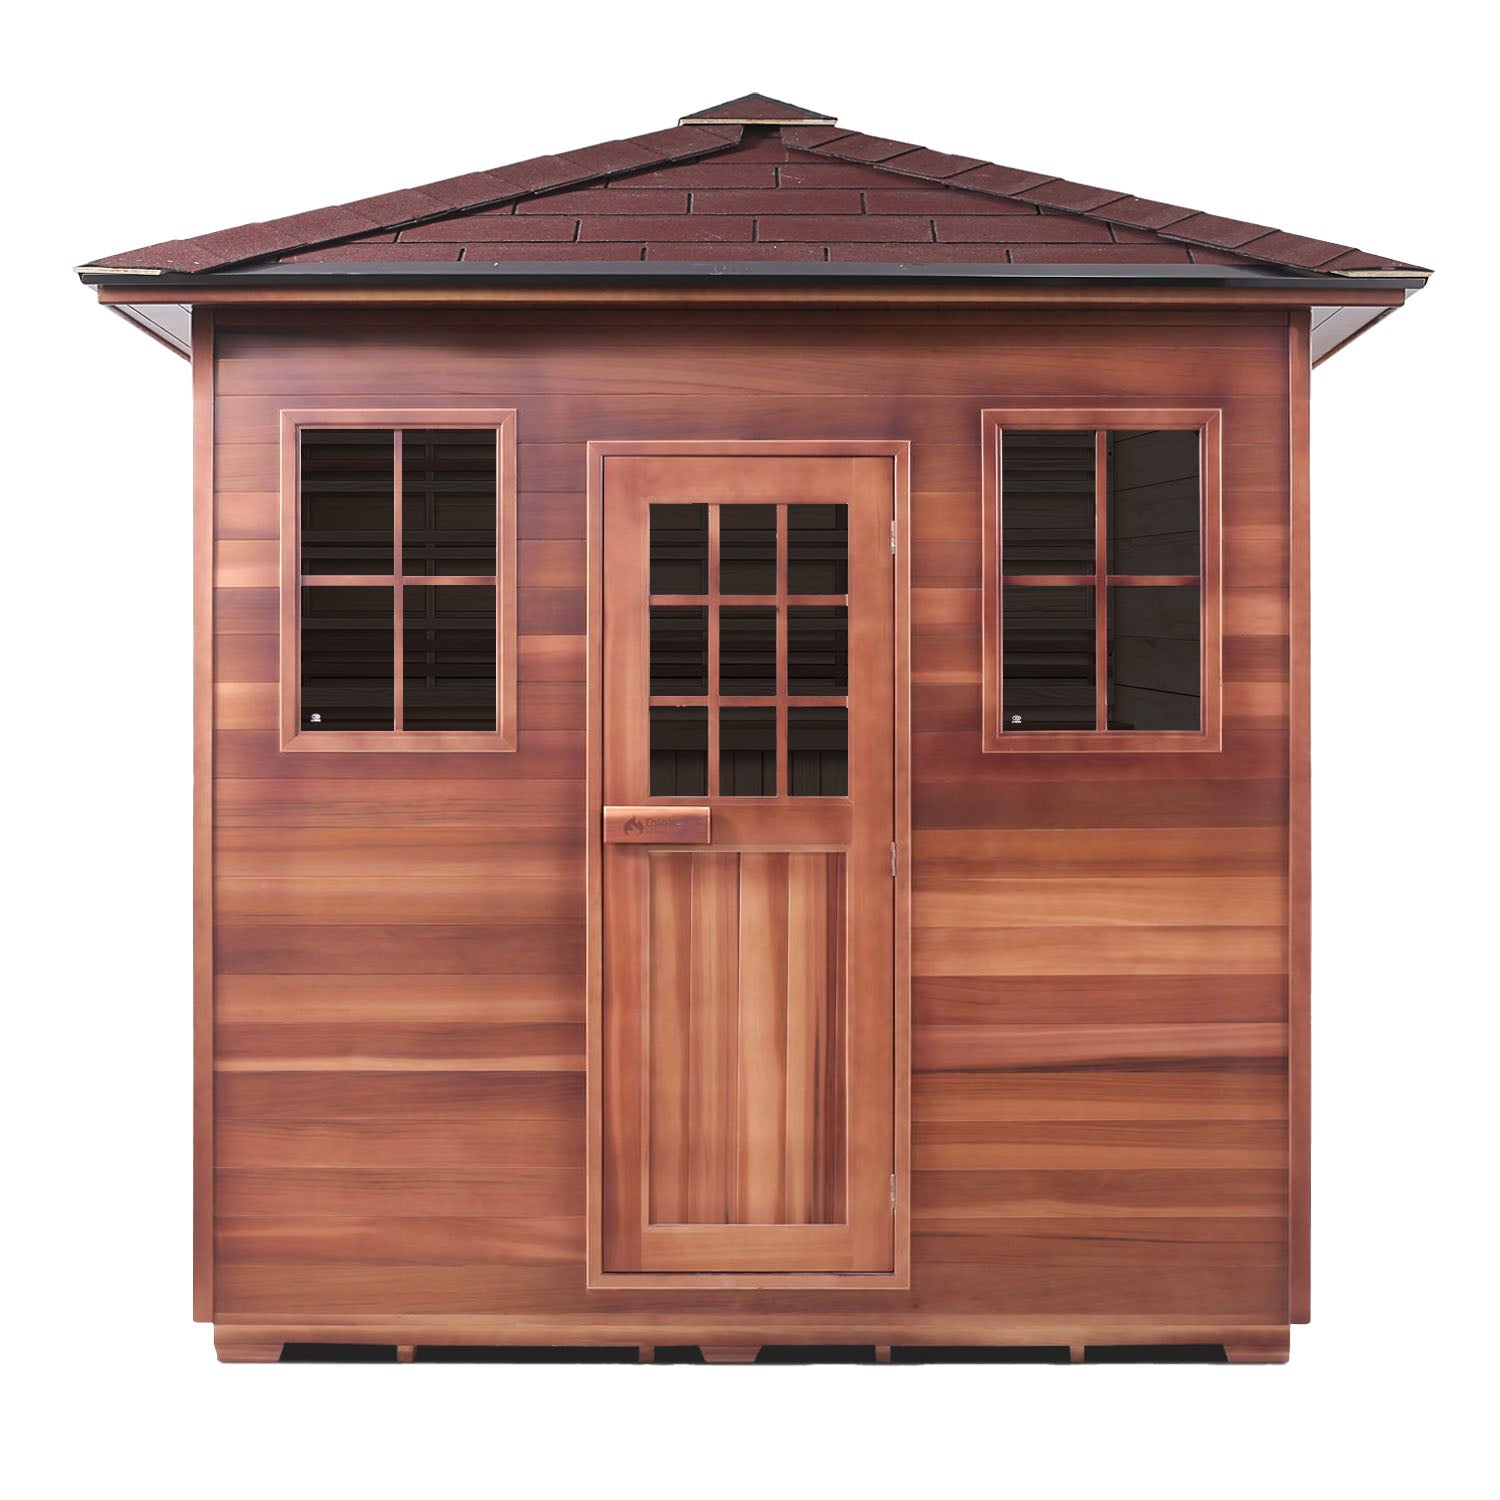 Enlighten Sauna SaunaTerra Dry Traditional MoonLight 8 Person Outdoor Sauna - Canadian Cedar - Carbon Heaters - Glass Door and Window - Peak Roof - Vital Hydrotherapy